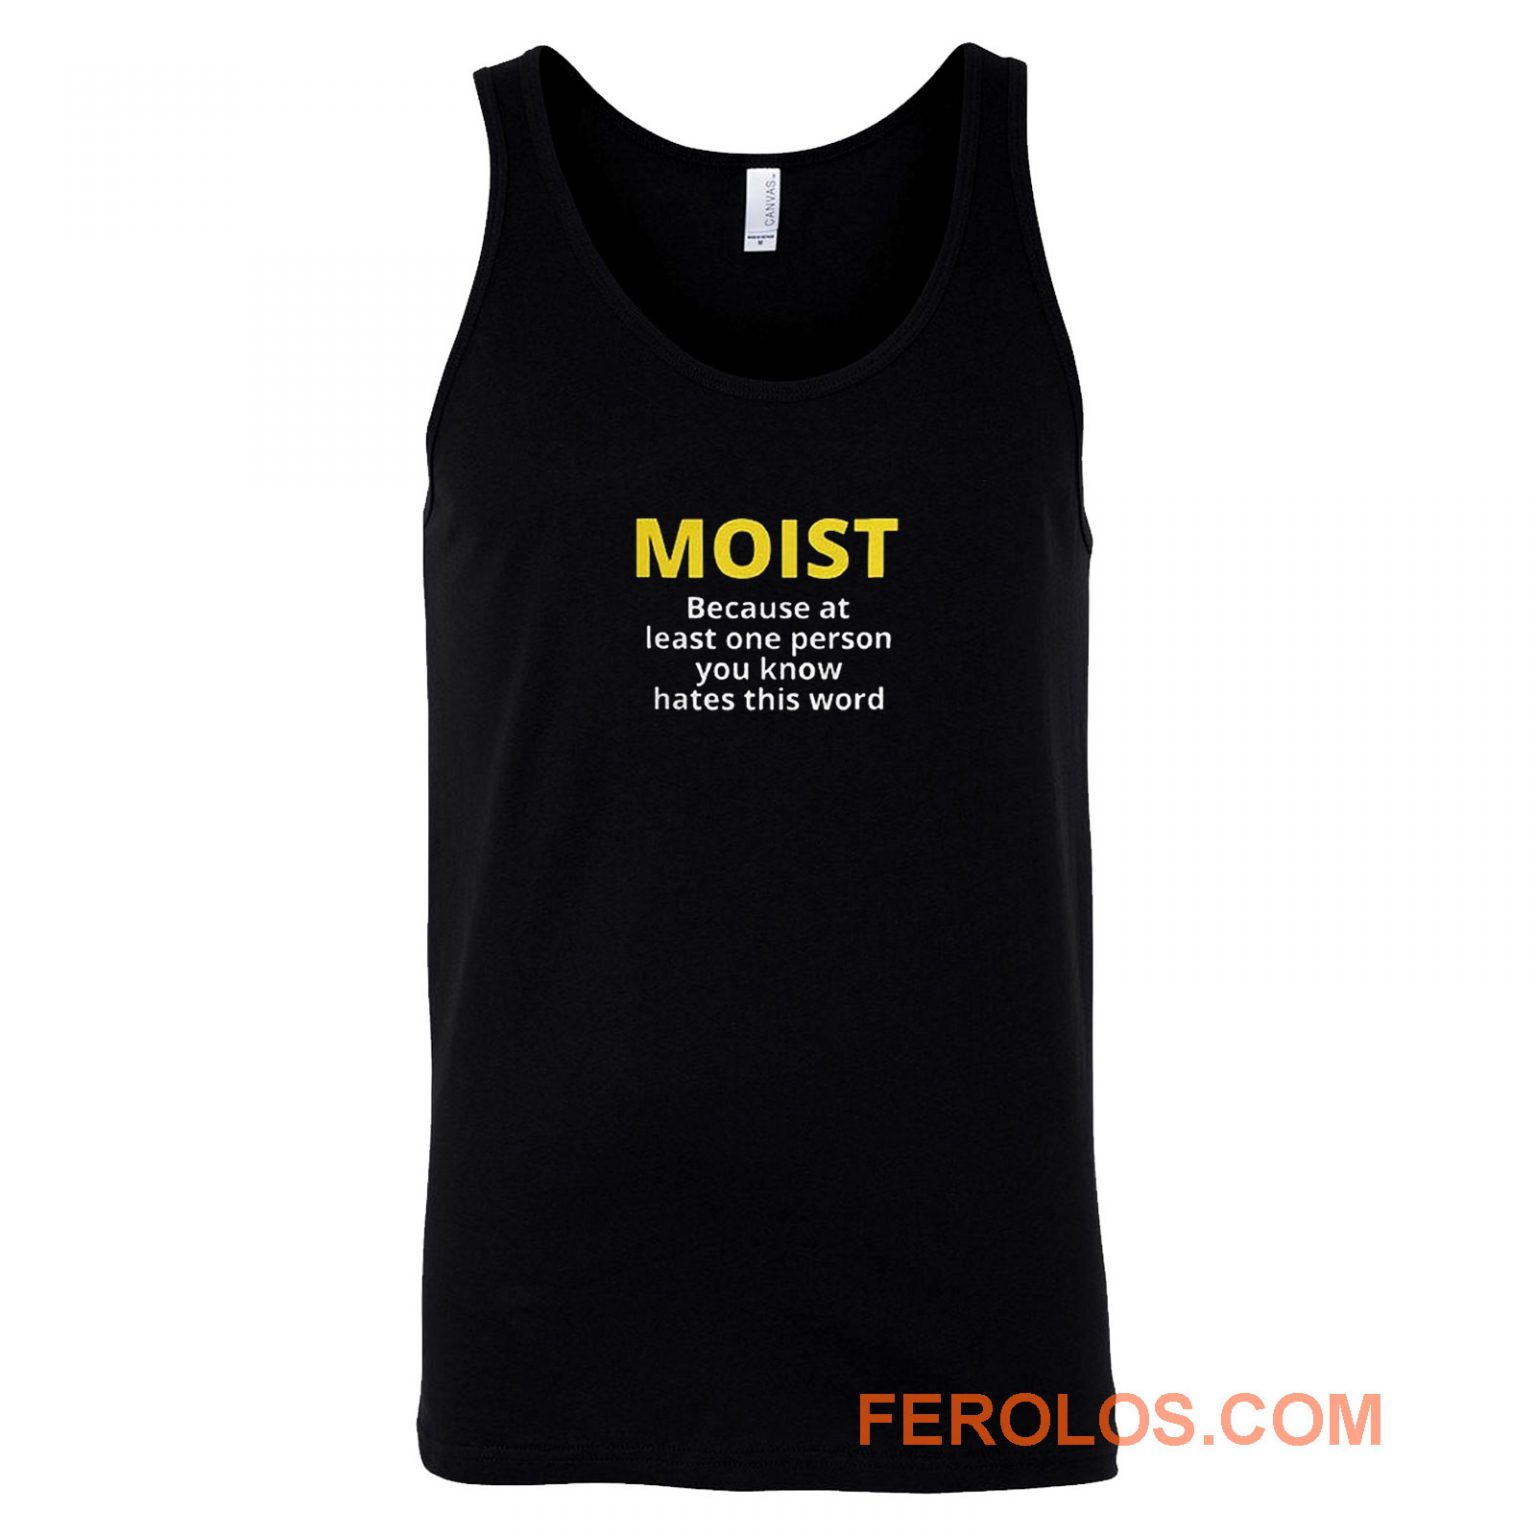 Moist Tank Top Men Women | FEROLOS.COM